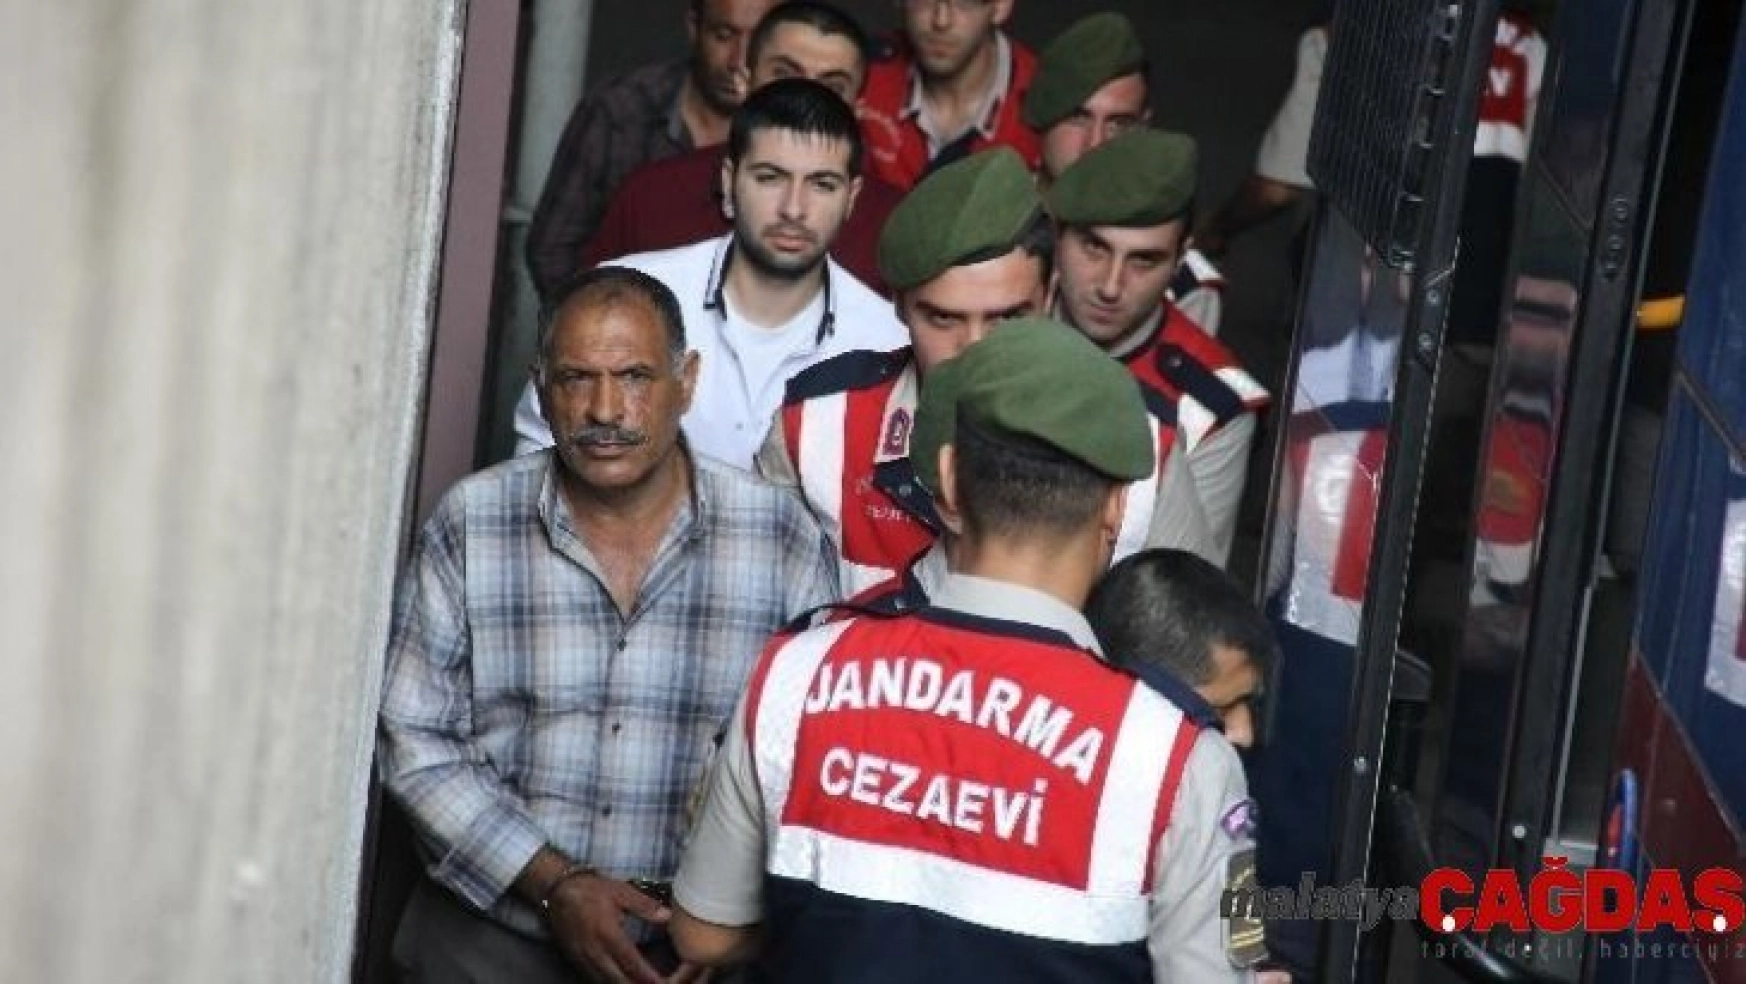 Bursa'da 3 kişinin öldüğü 'Roman düğünü' cinayetinin sanıklarına ceza yağdı